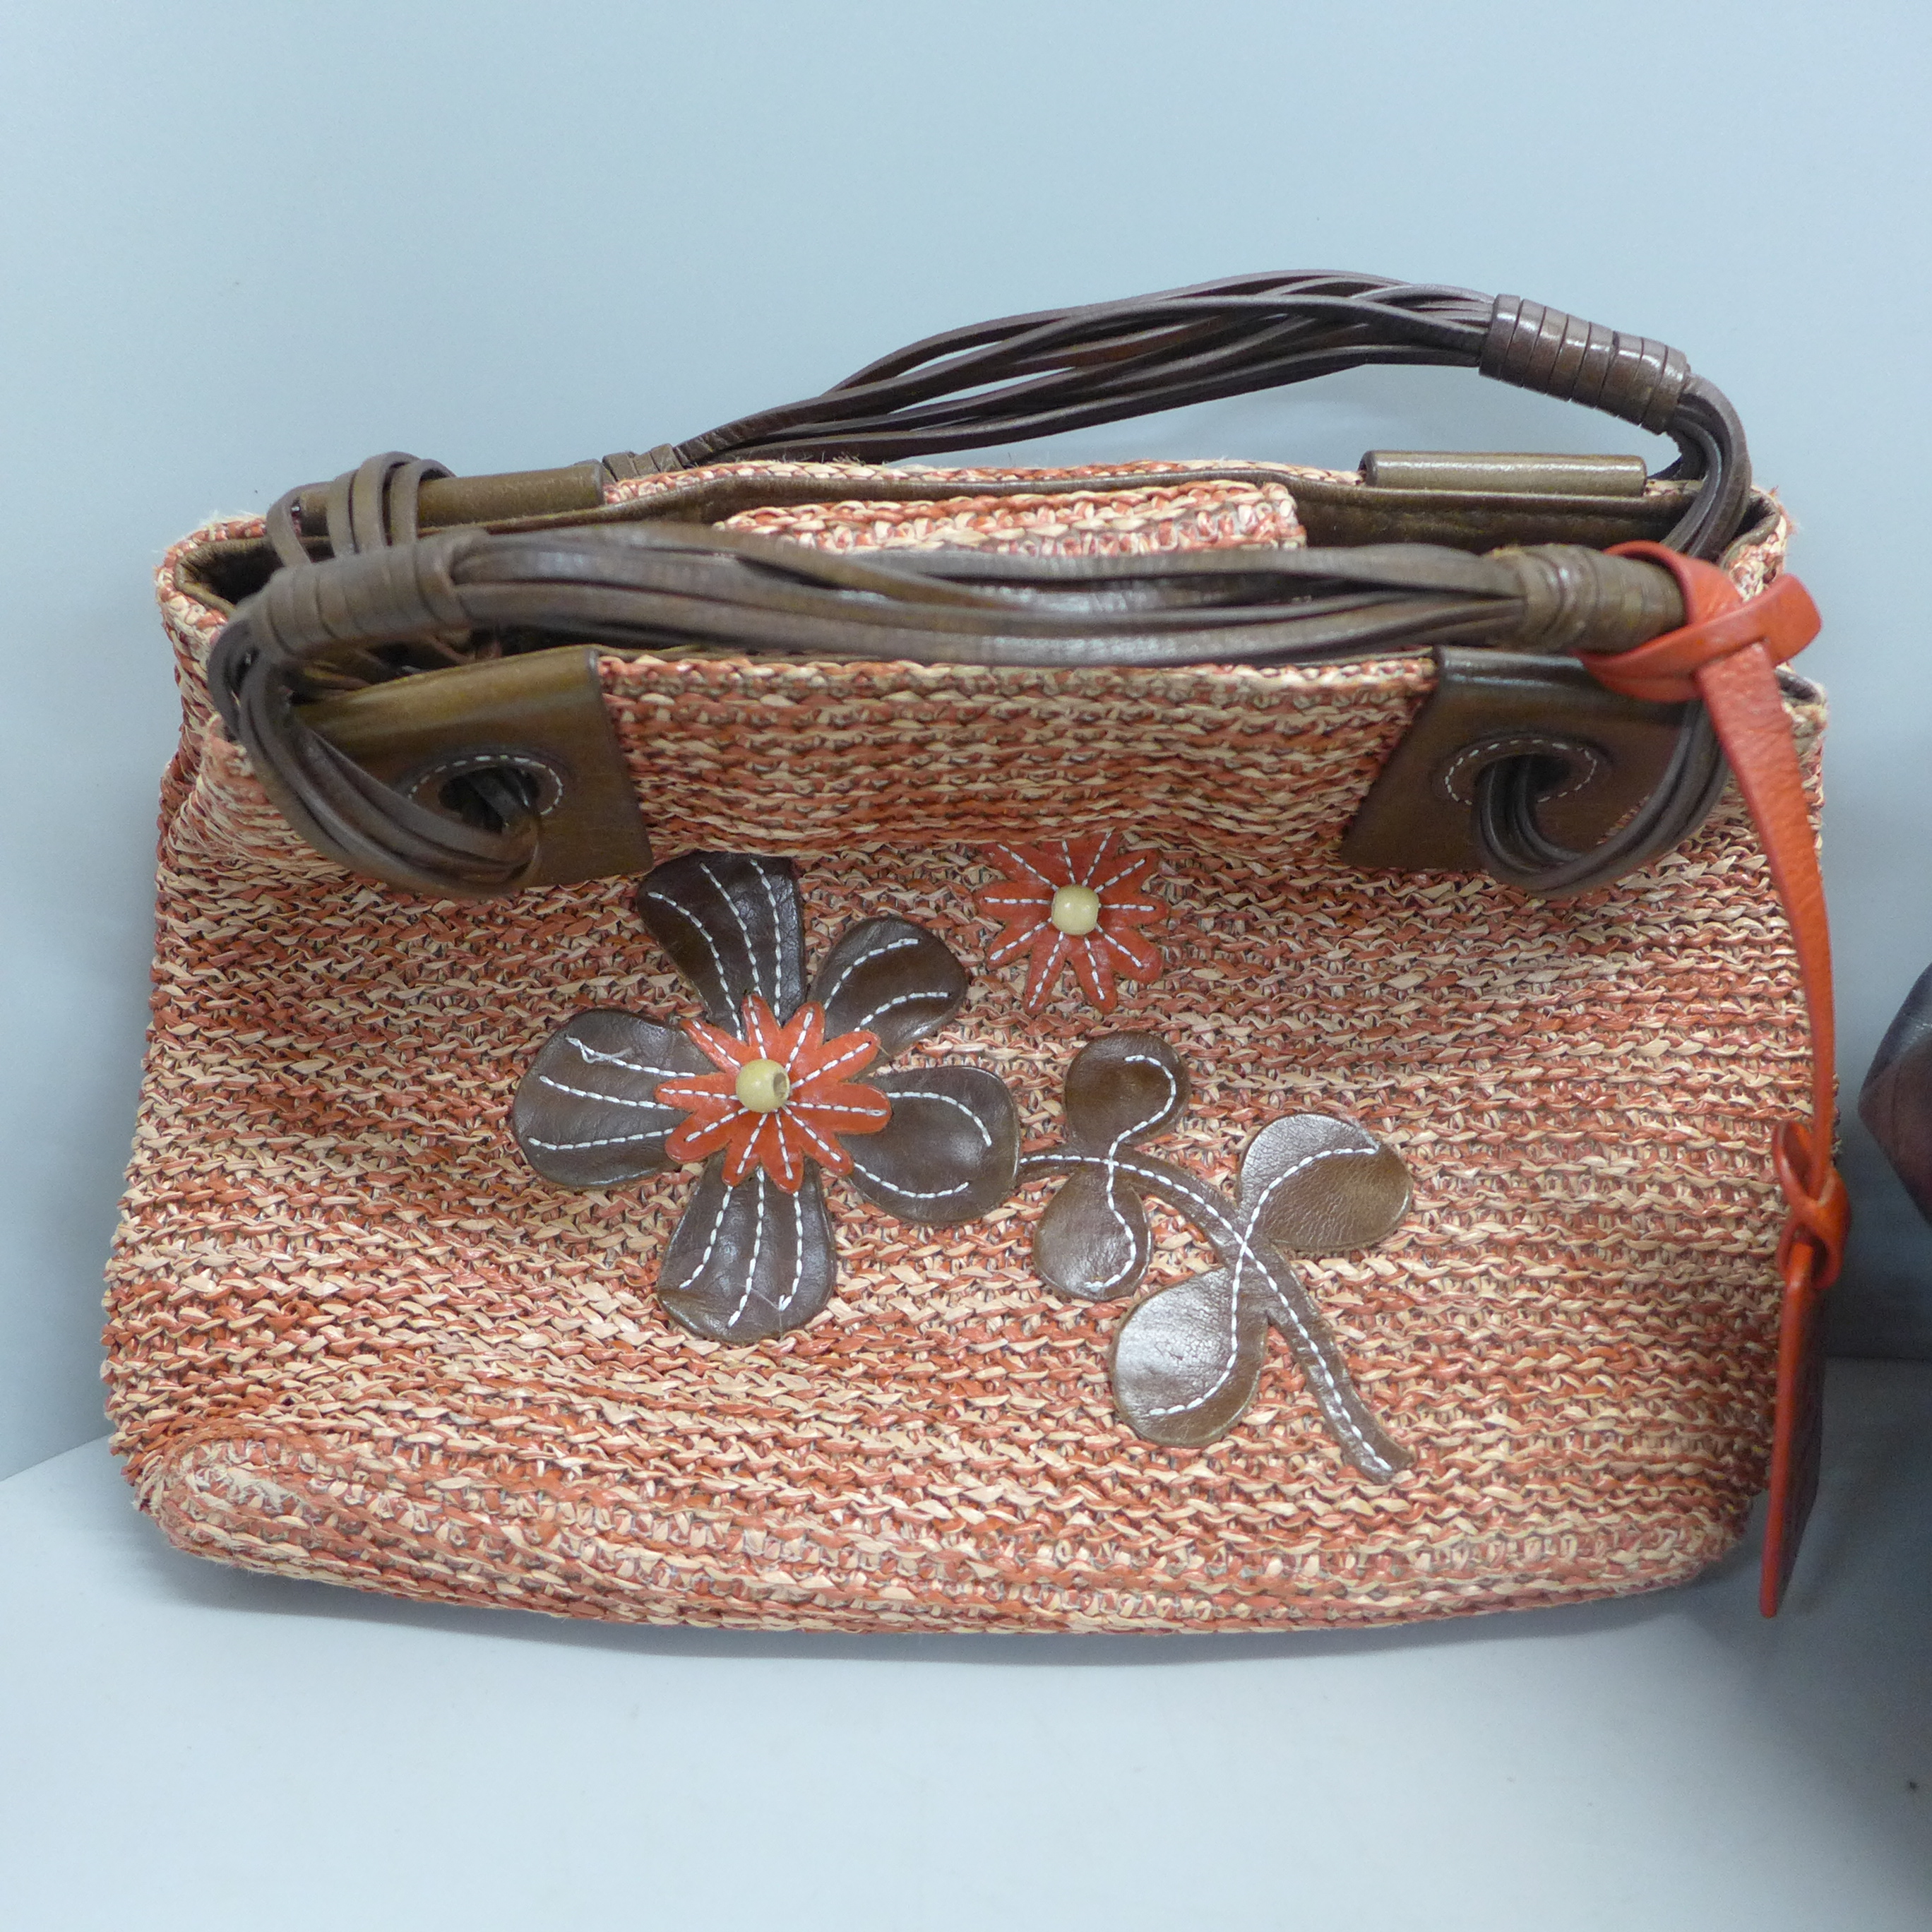 Two Tula handbags - Image 2 of 2